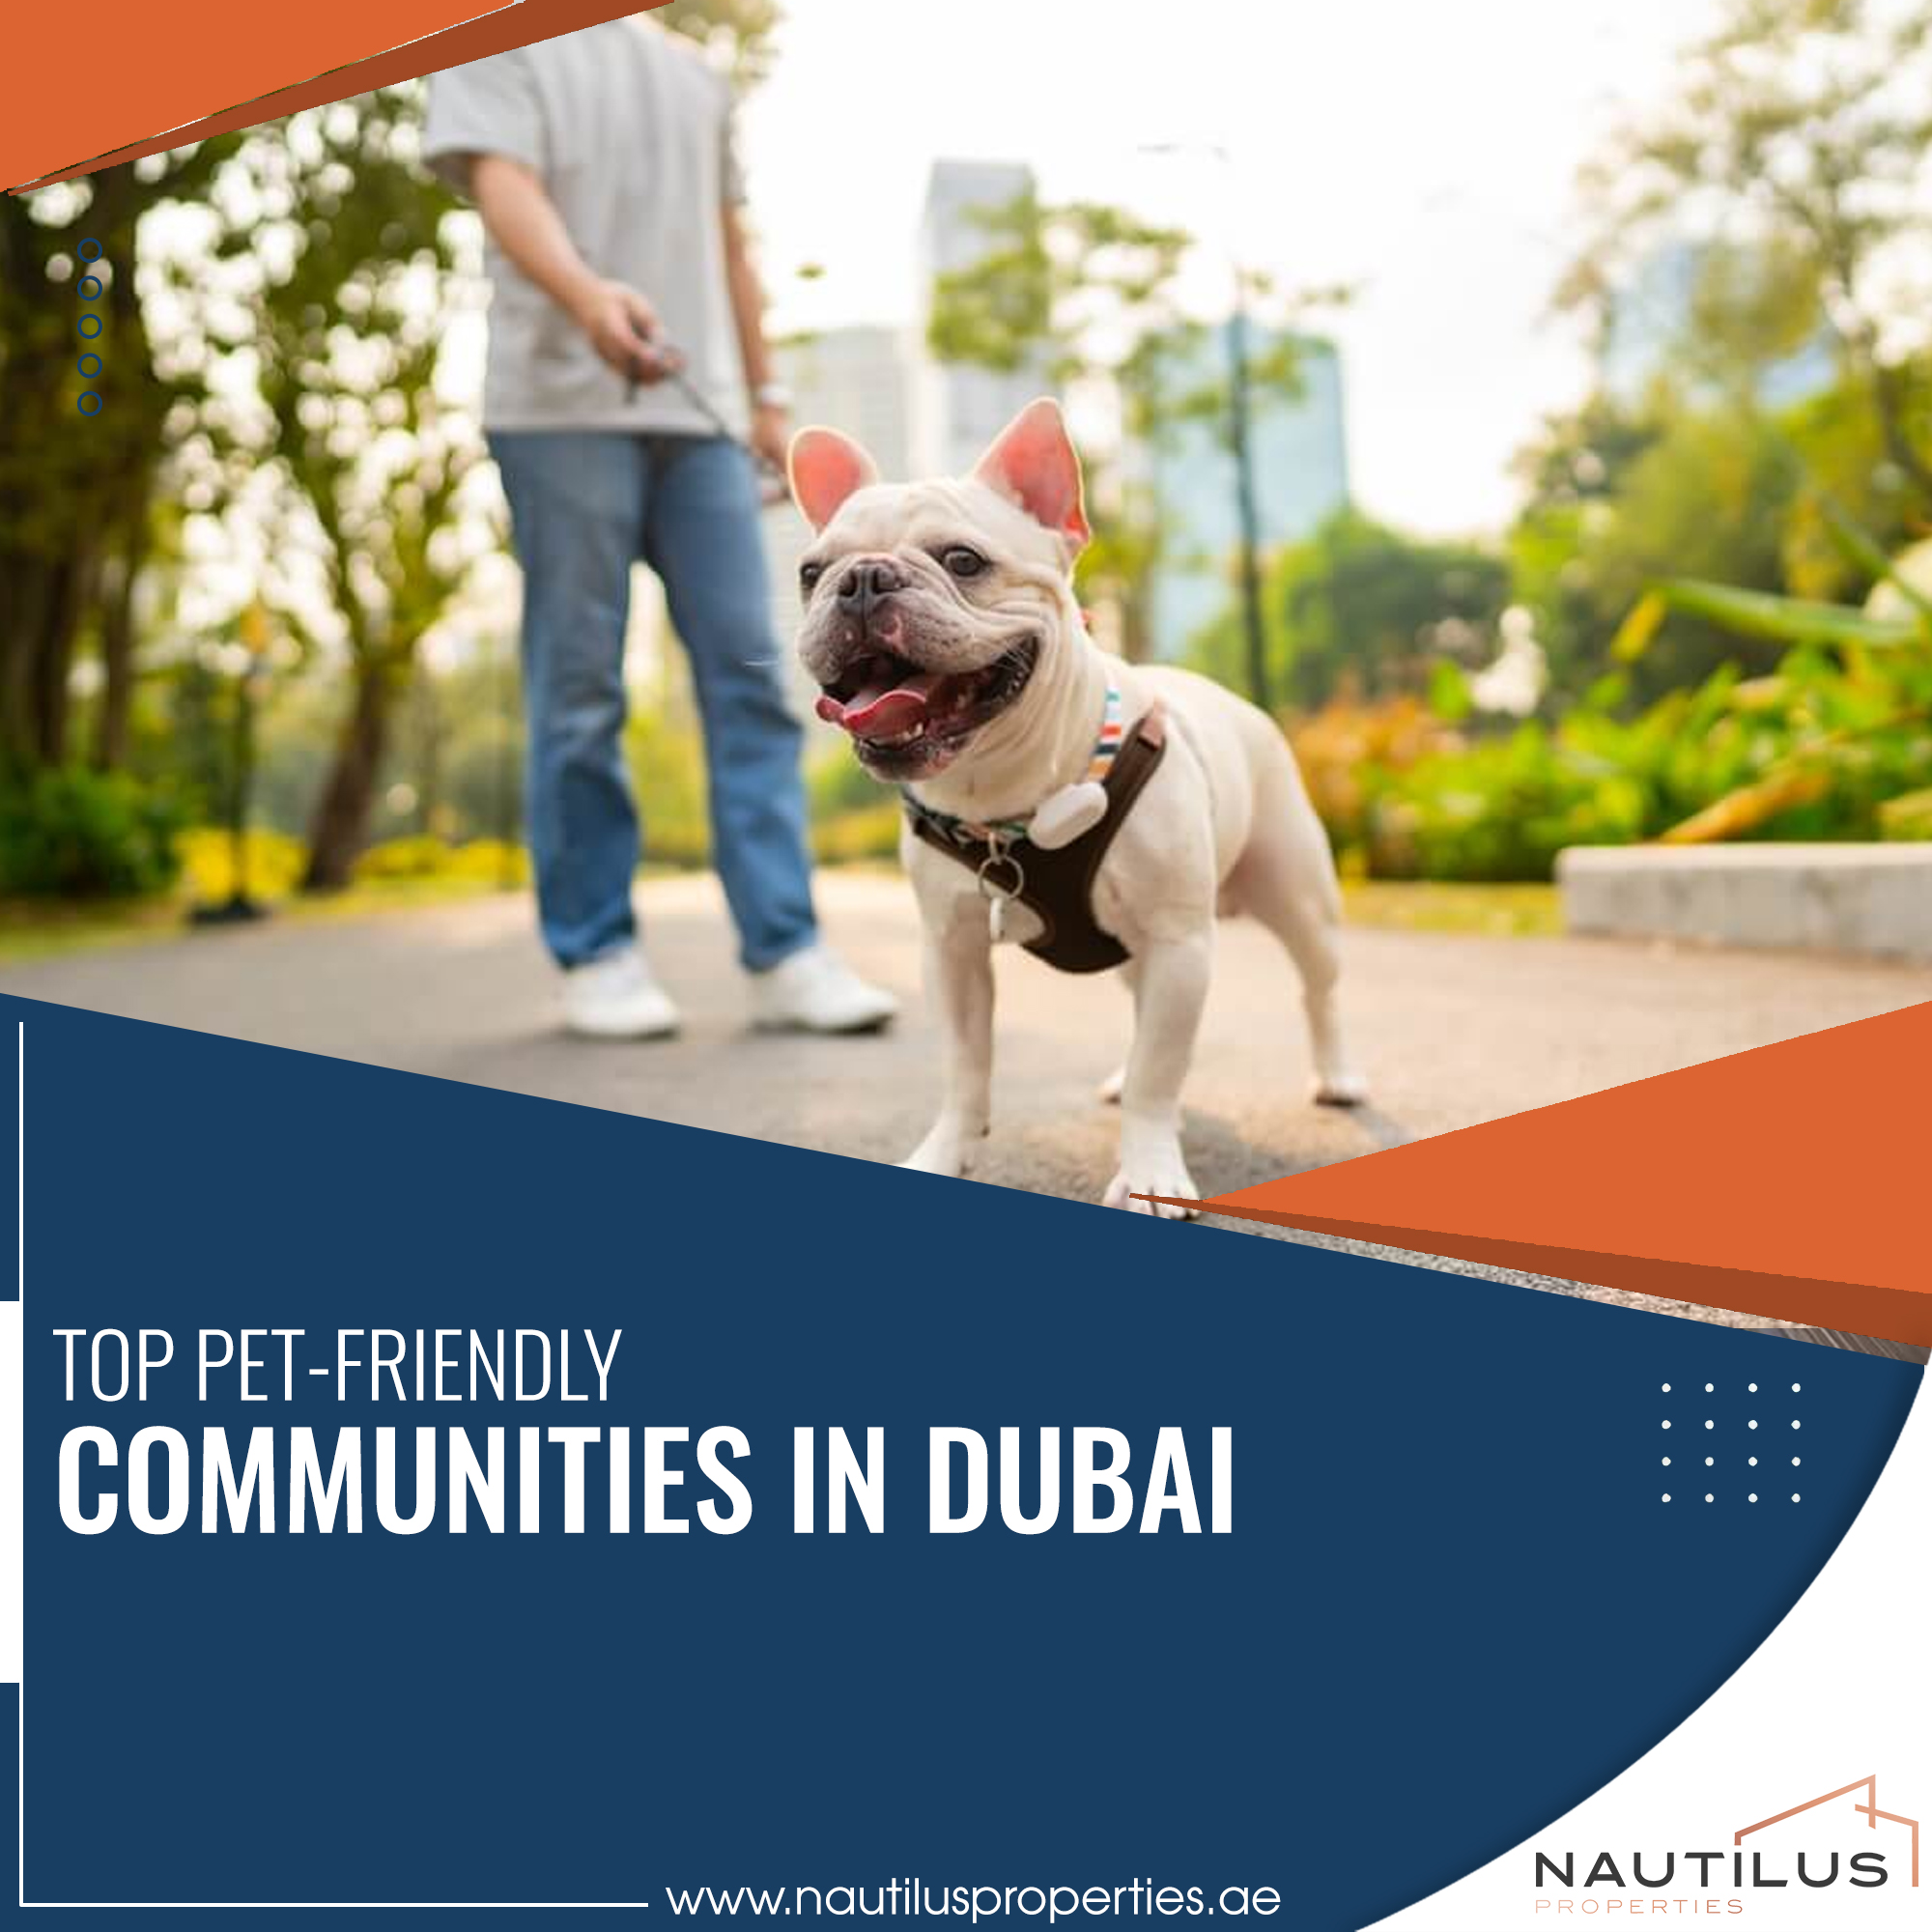 French Bulldog on a leash in a pet-friendly community in Dubai.